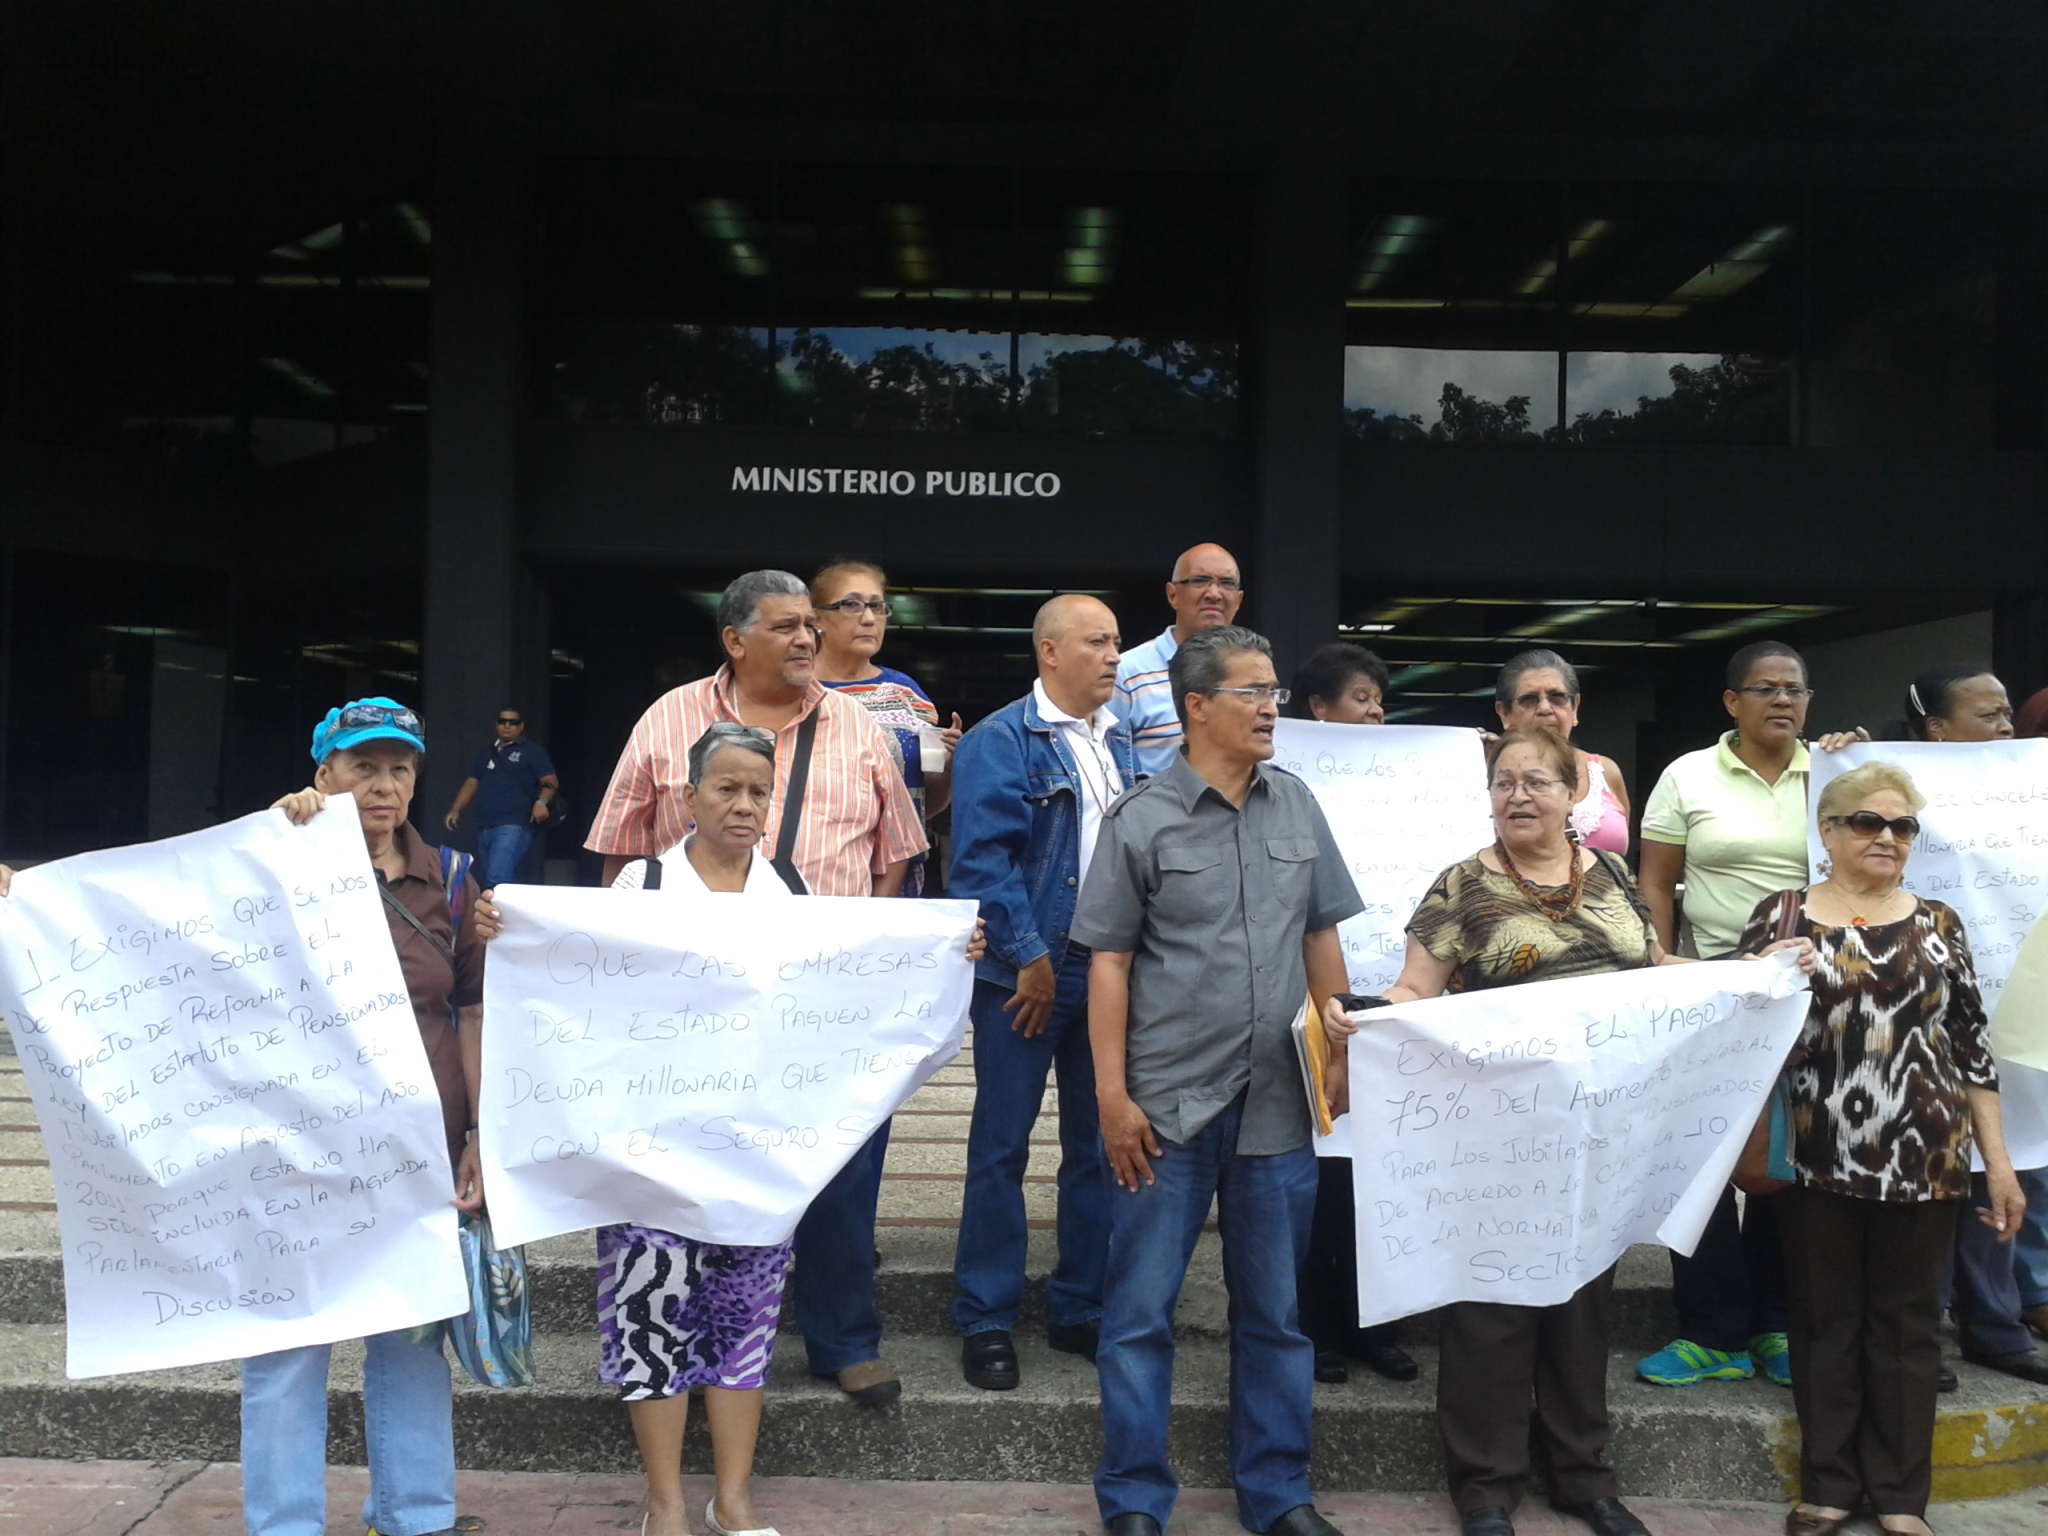 Así protestan los pensionados frente a la Fiscalía (Fotos)